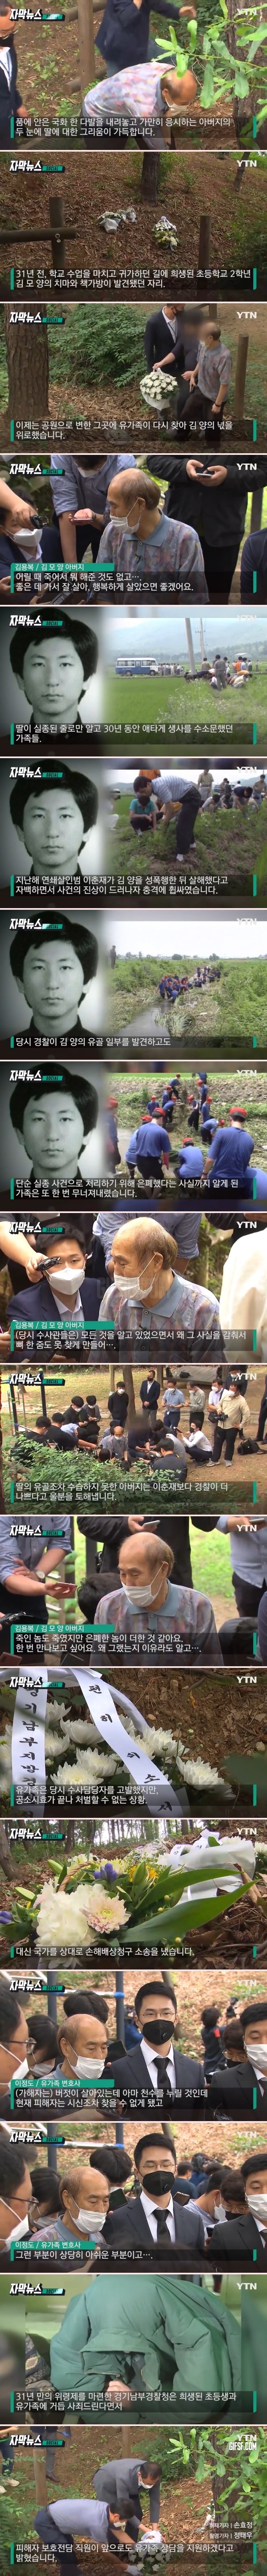 이춘재에 희생된 김 모양 유골 은폐한 경찰. 처벌 불가.jpg